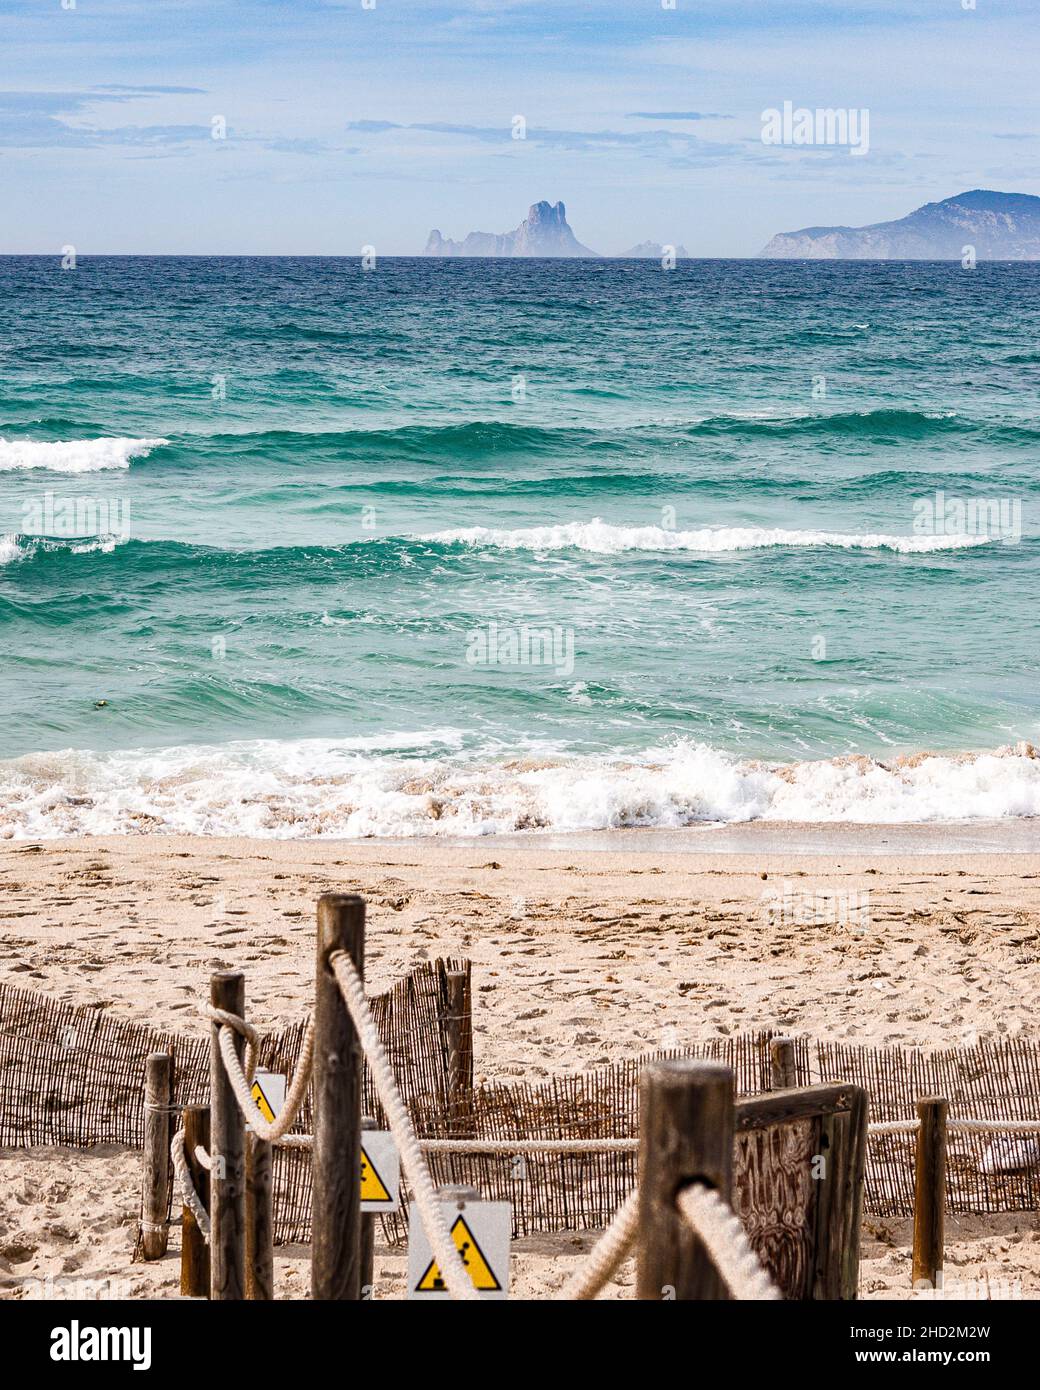 Mediterranean See. Viste da Formentera, Isole Balear, Spagna. Bellissima spiaggia con sabbia chiara e acqua turchese Foto Stock